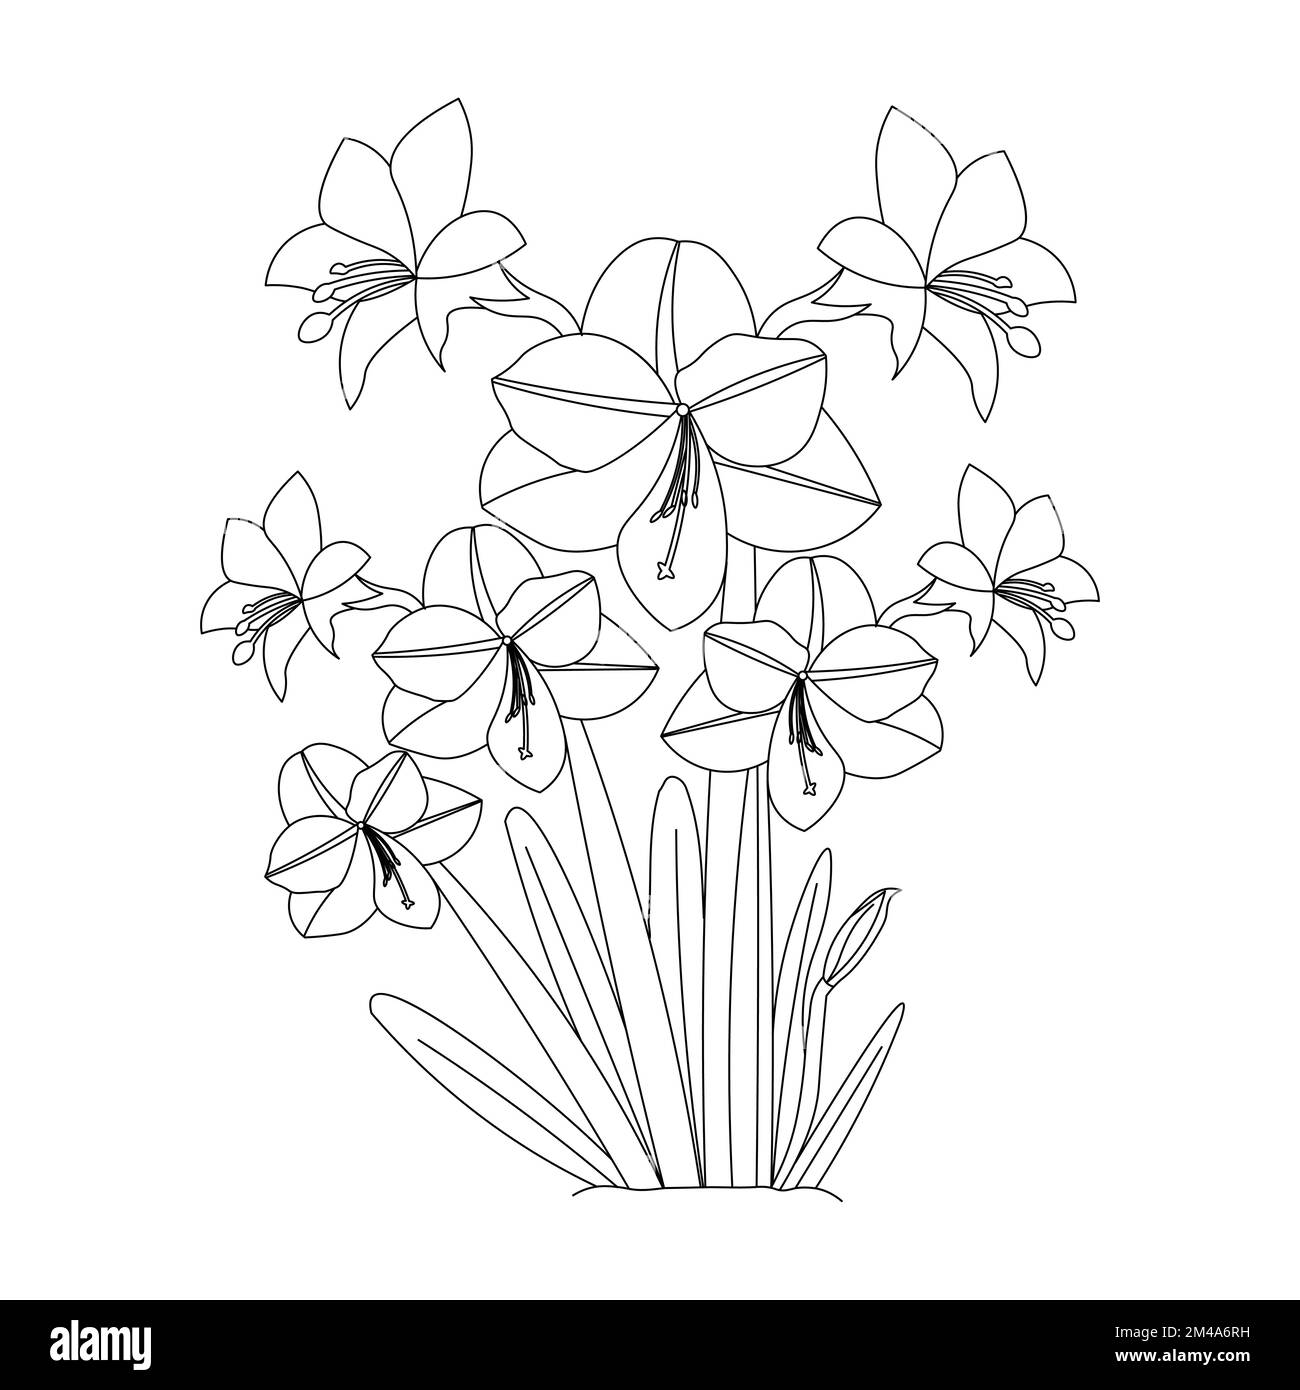 Wunderschöne Blumen Malseite mit Bleistiftskizze, detailliert in Vektorgrafik von Strichgrafiken Stock Vektor